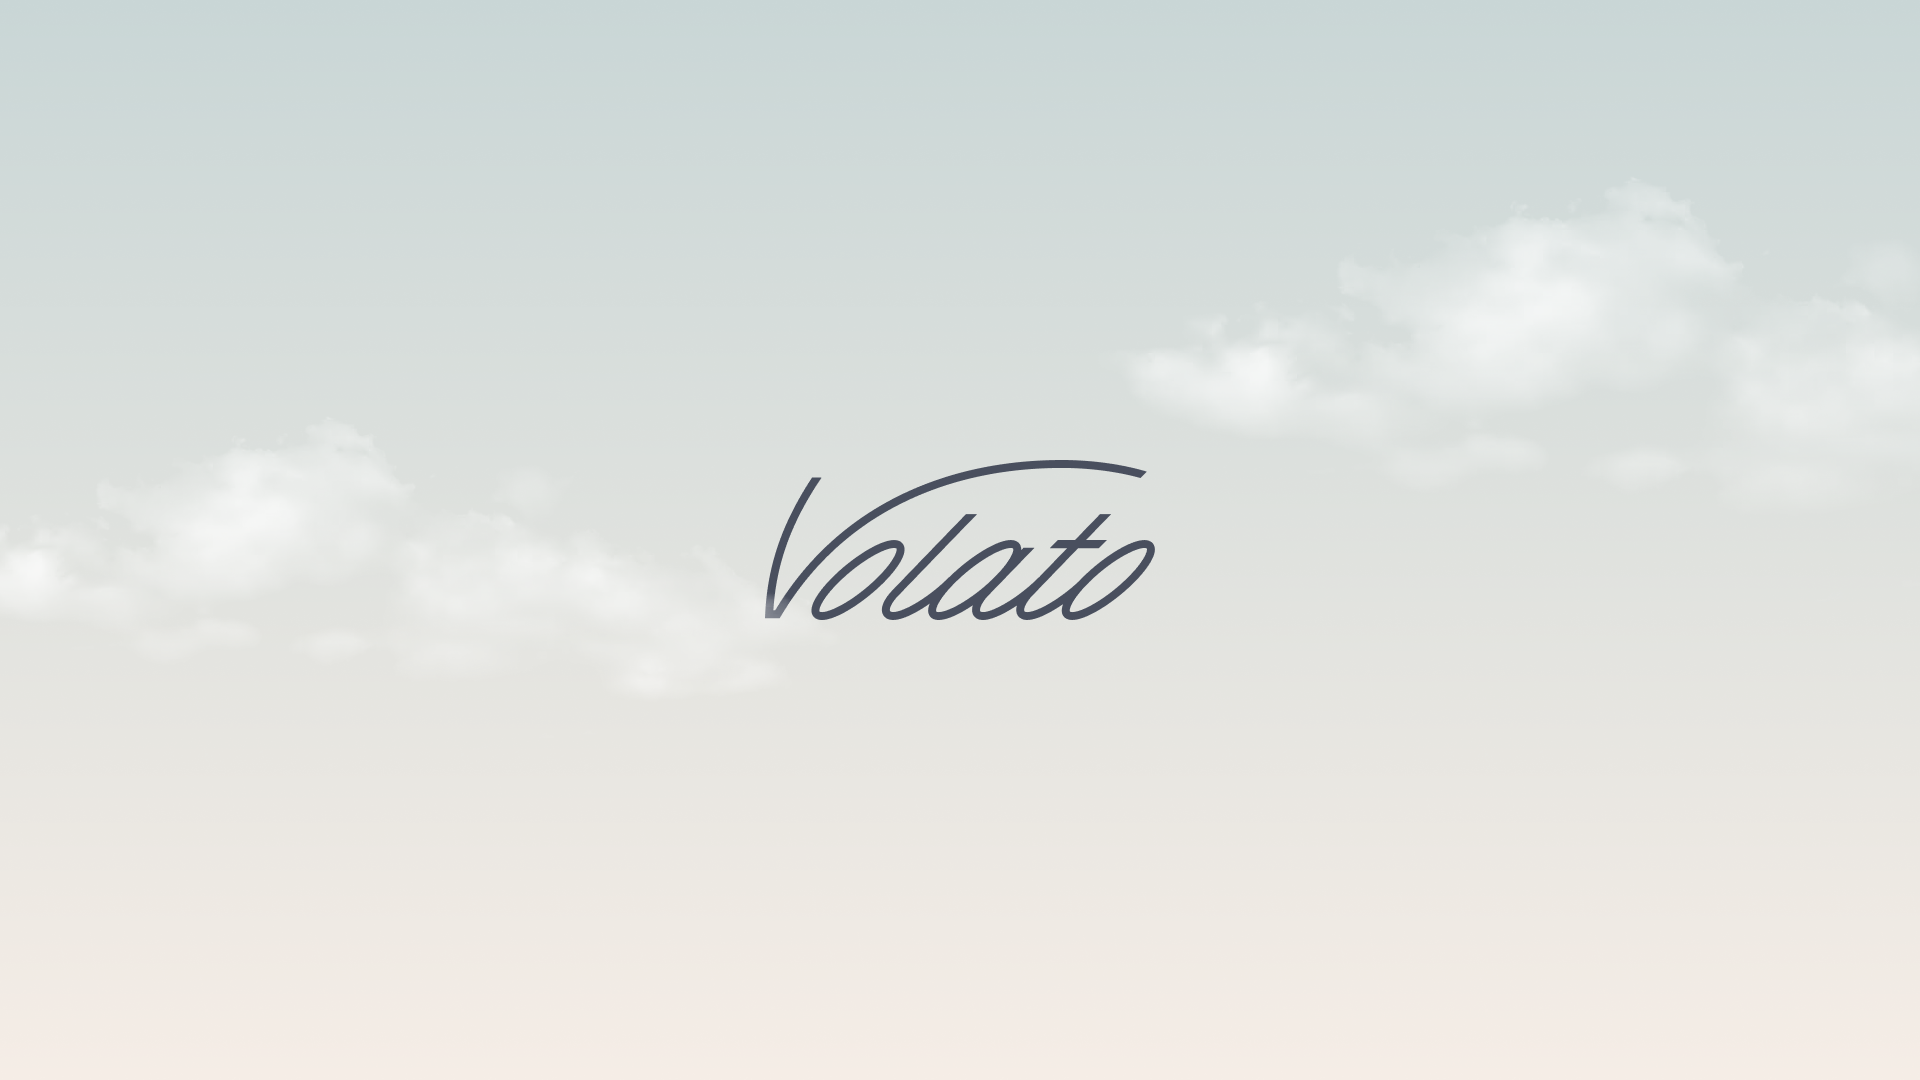 06A_Volato